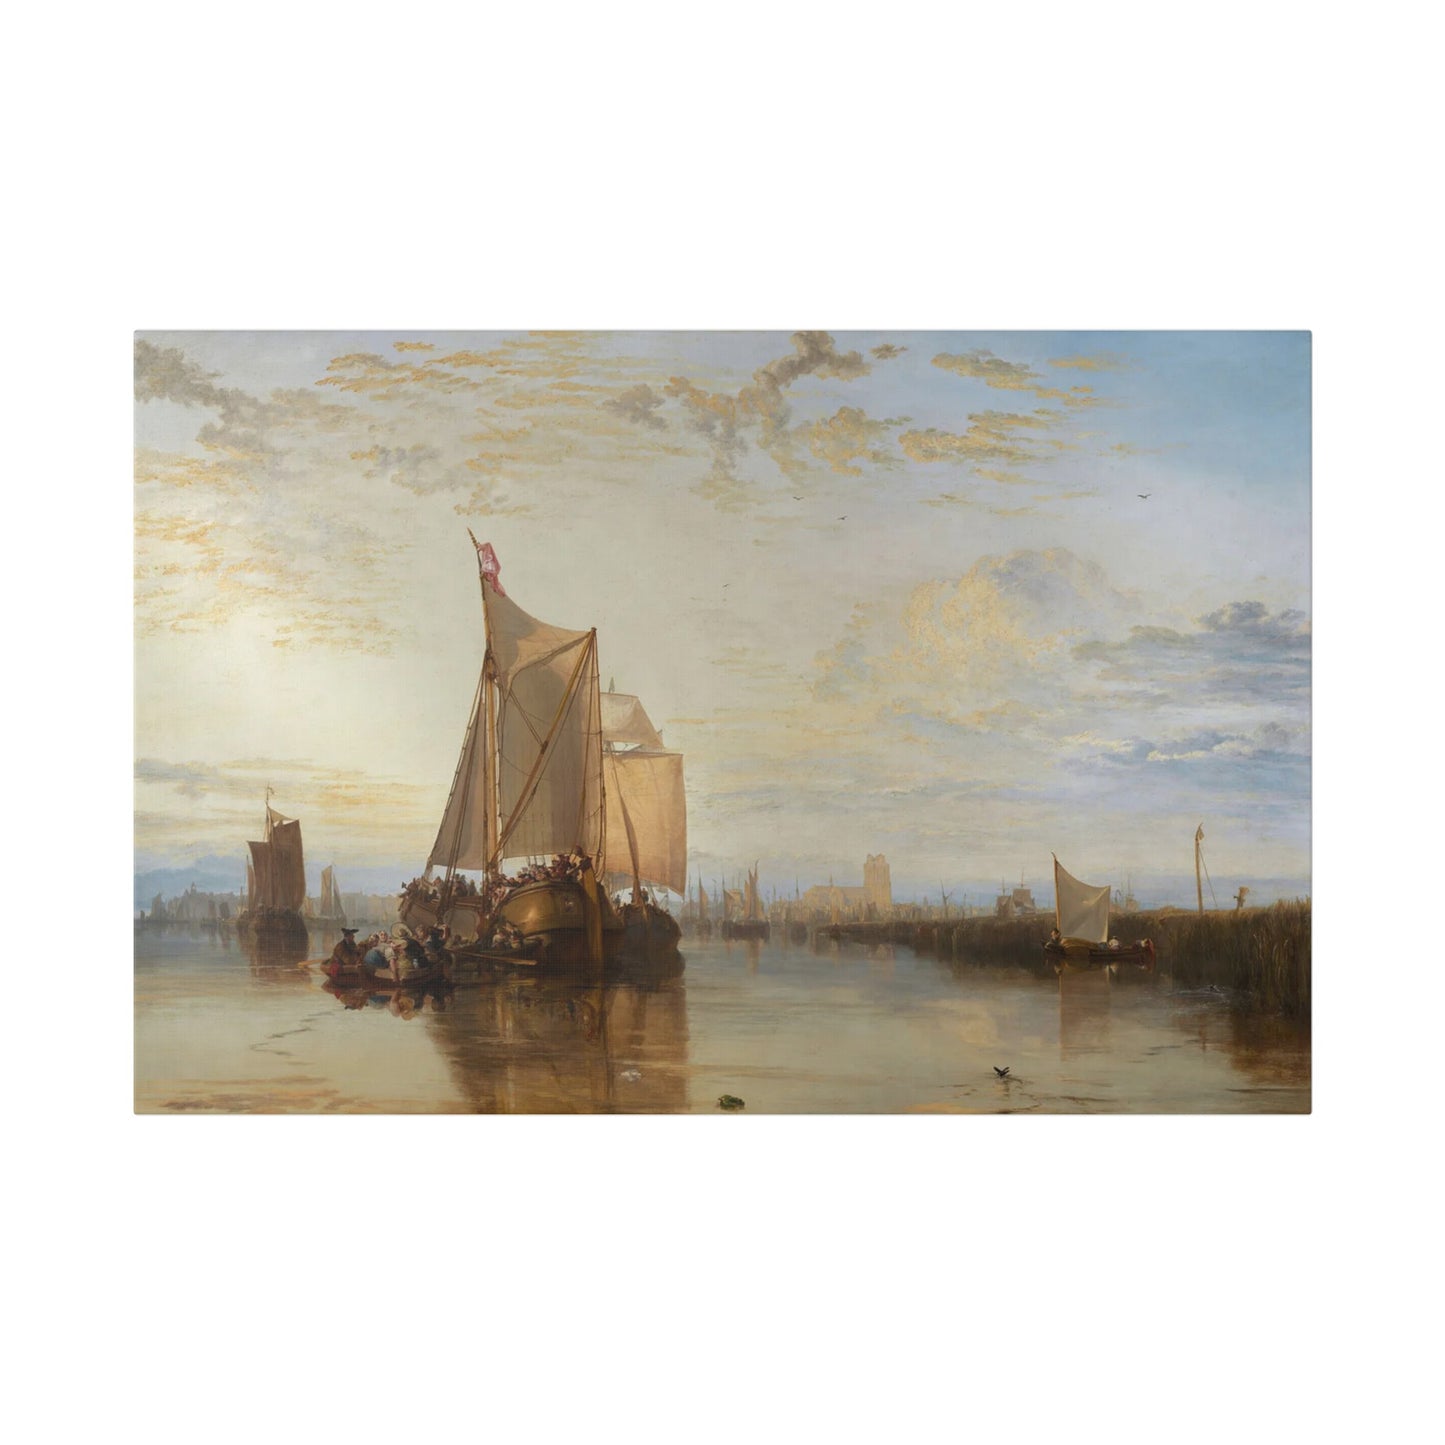 J.M.W. Turner "Dort or Dordrecht: The Dort Packet-Boat from Rotterdam Becalmed"